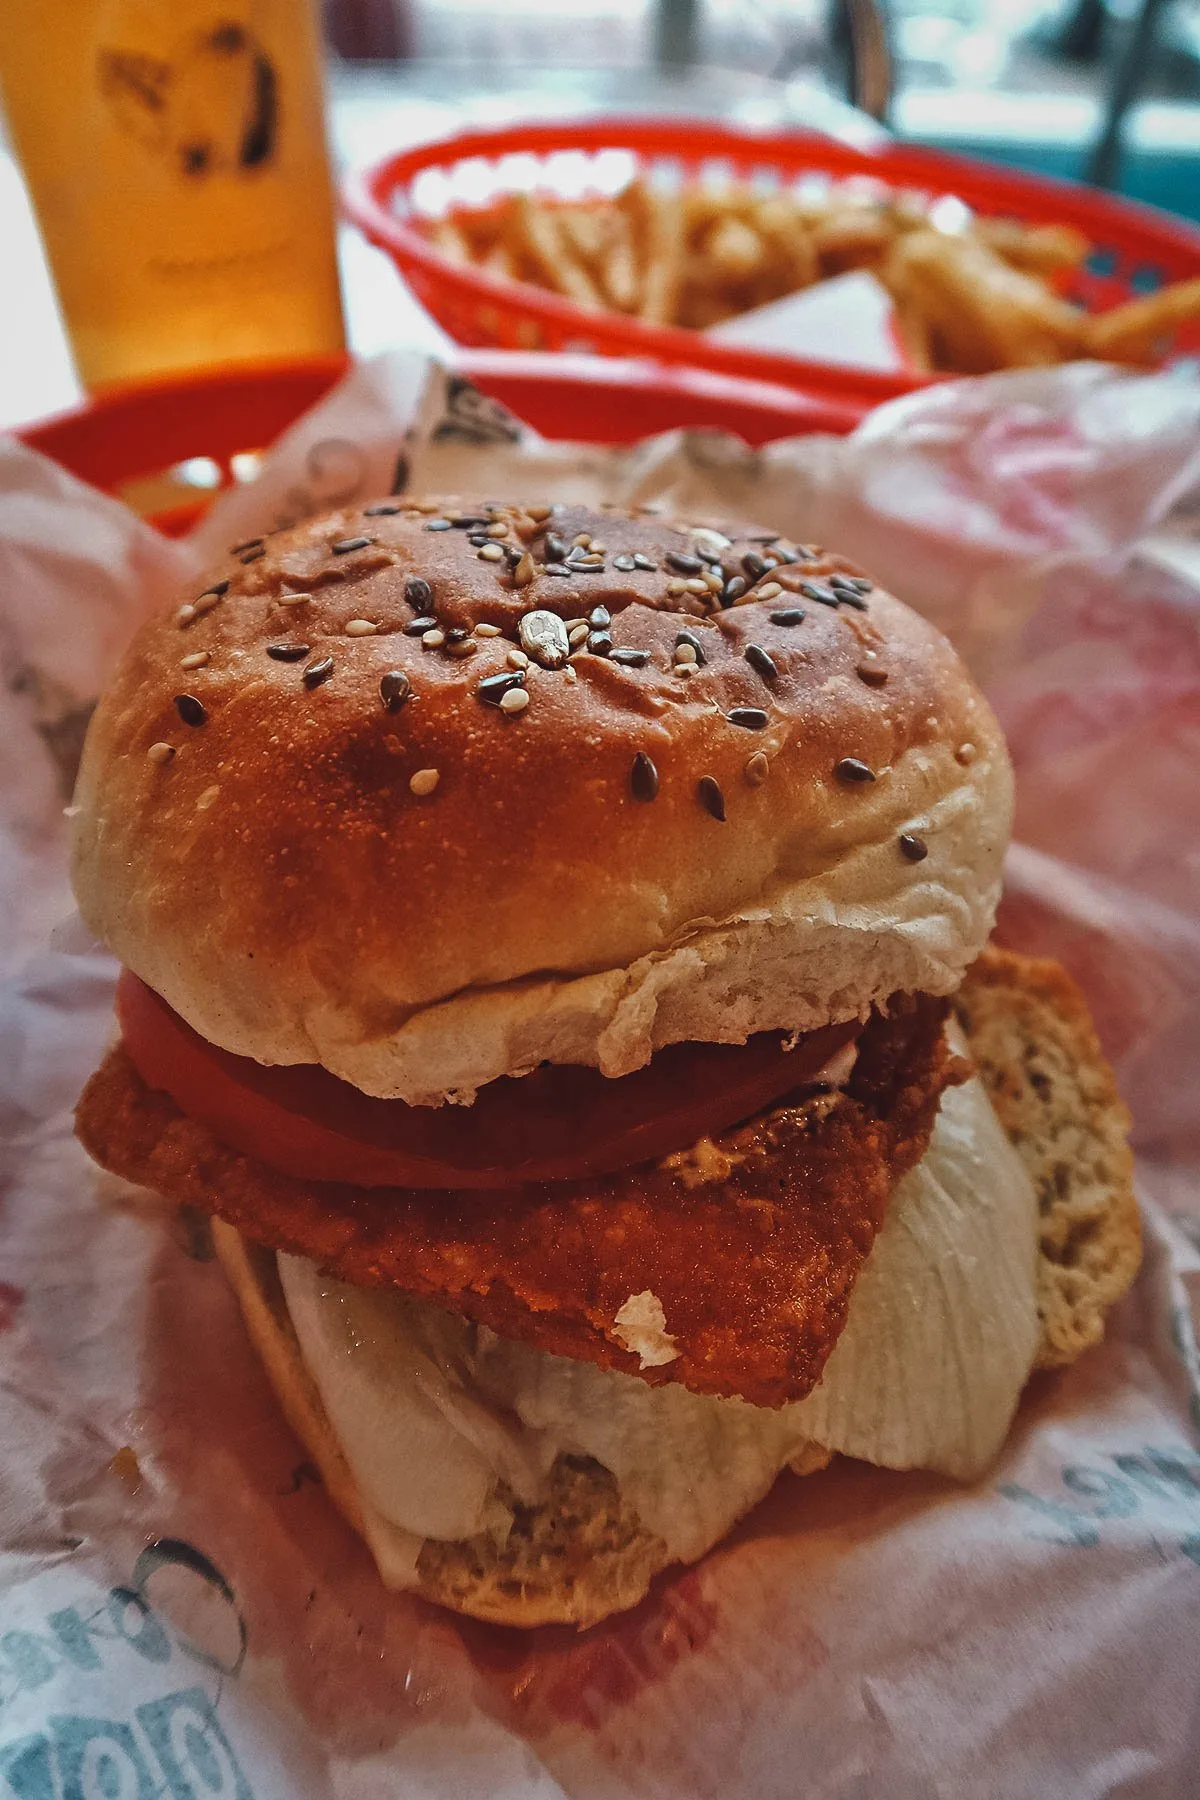 Vegan burger at Comet 984 restaurant